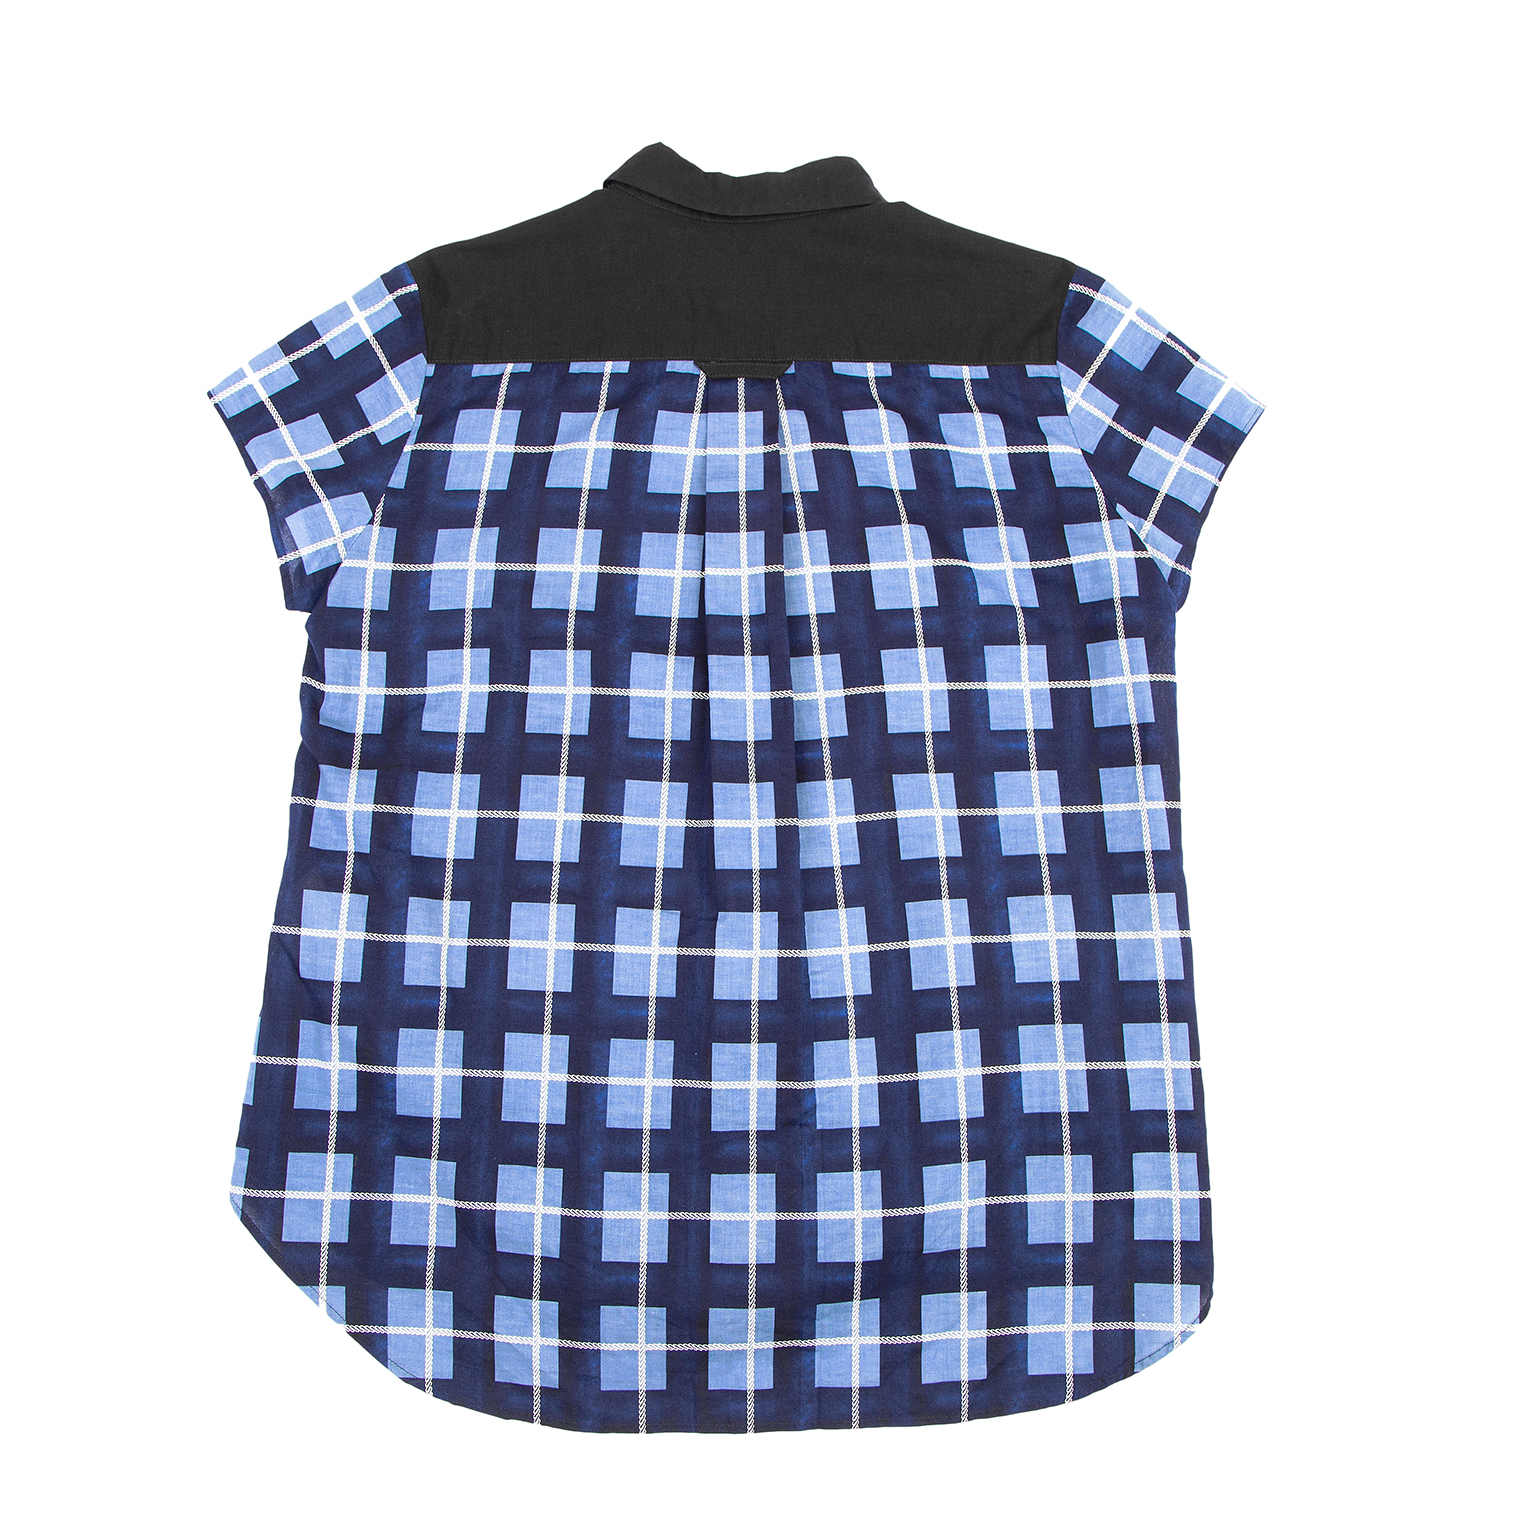 ワイズY's チェック切替デザイン半袖シャツ 黒紺水色2